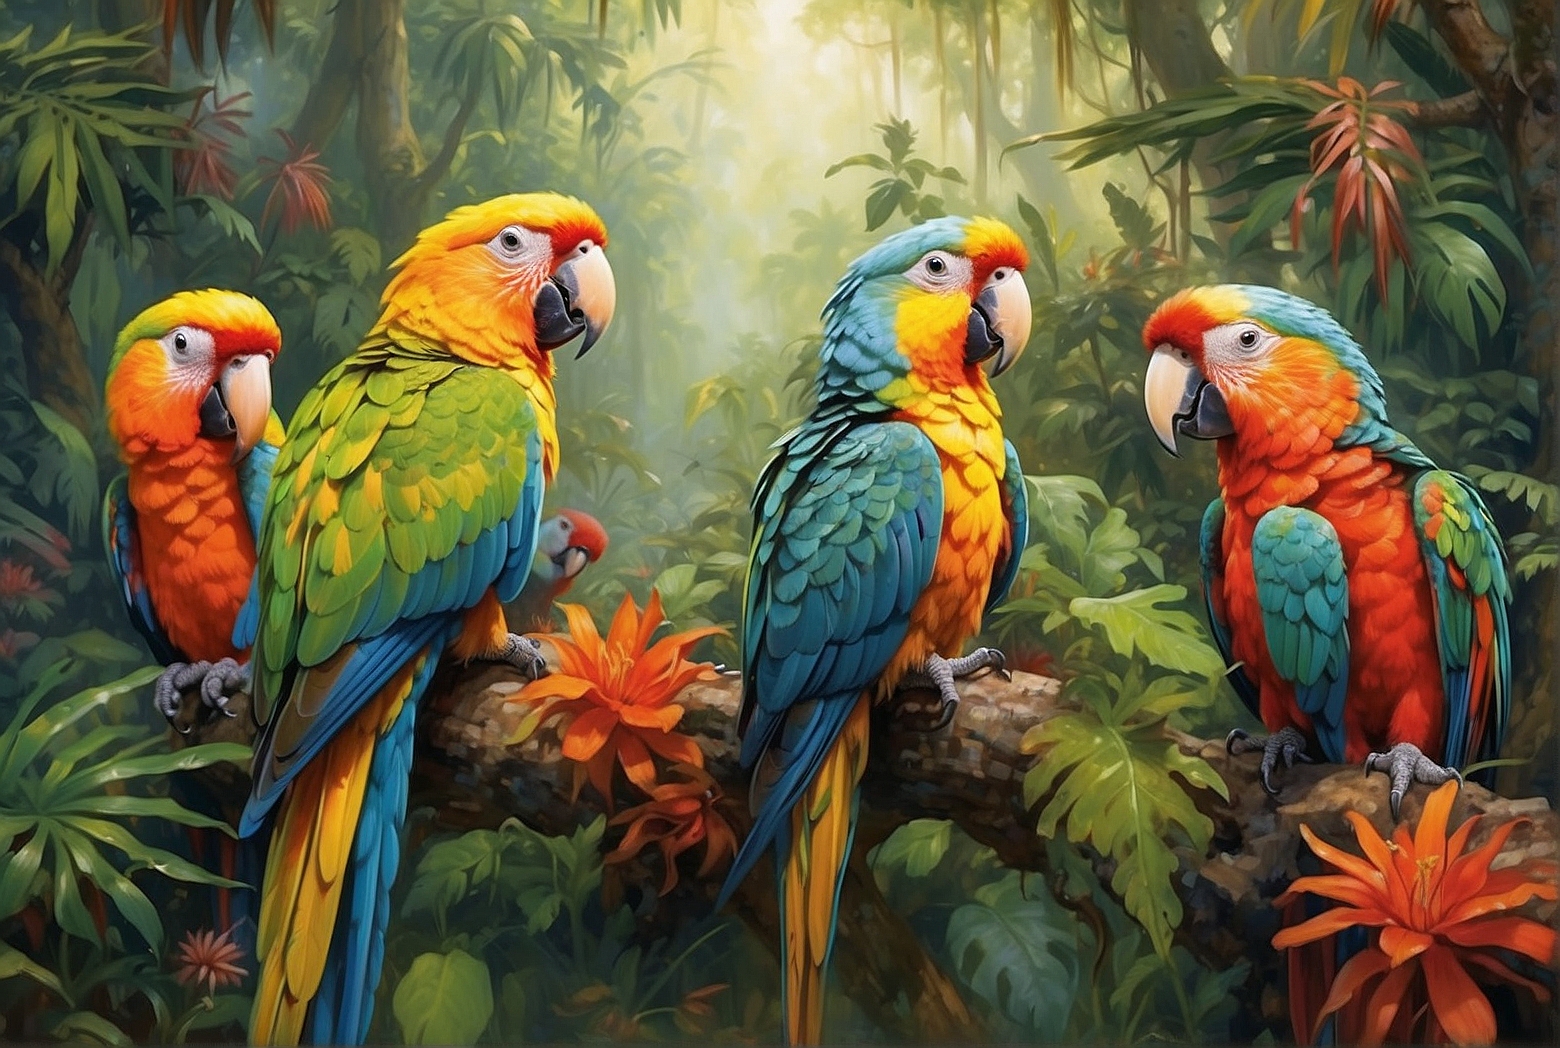 Native Habitats of Parrots